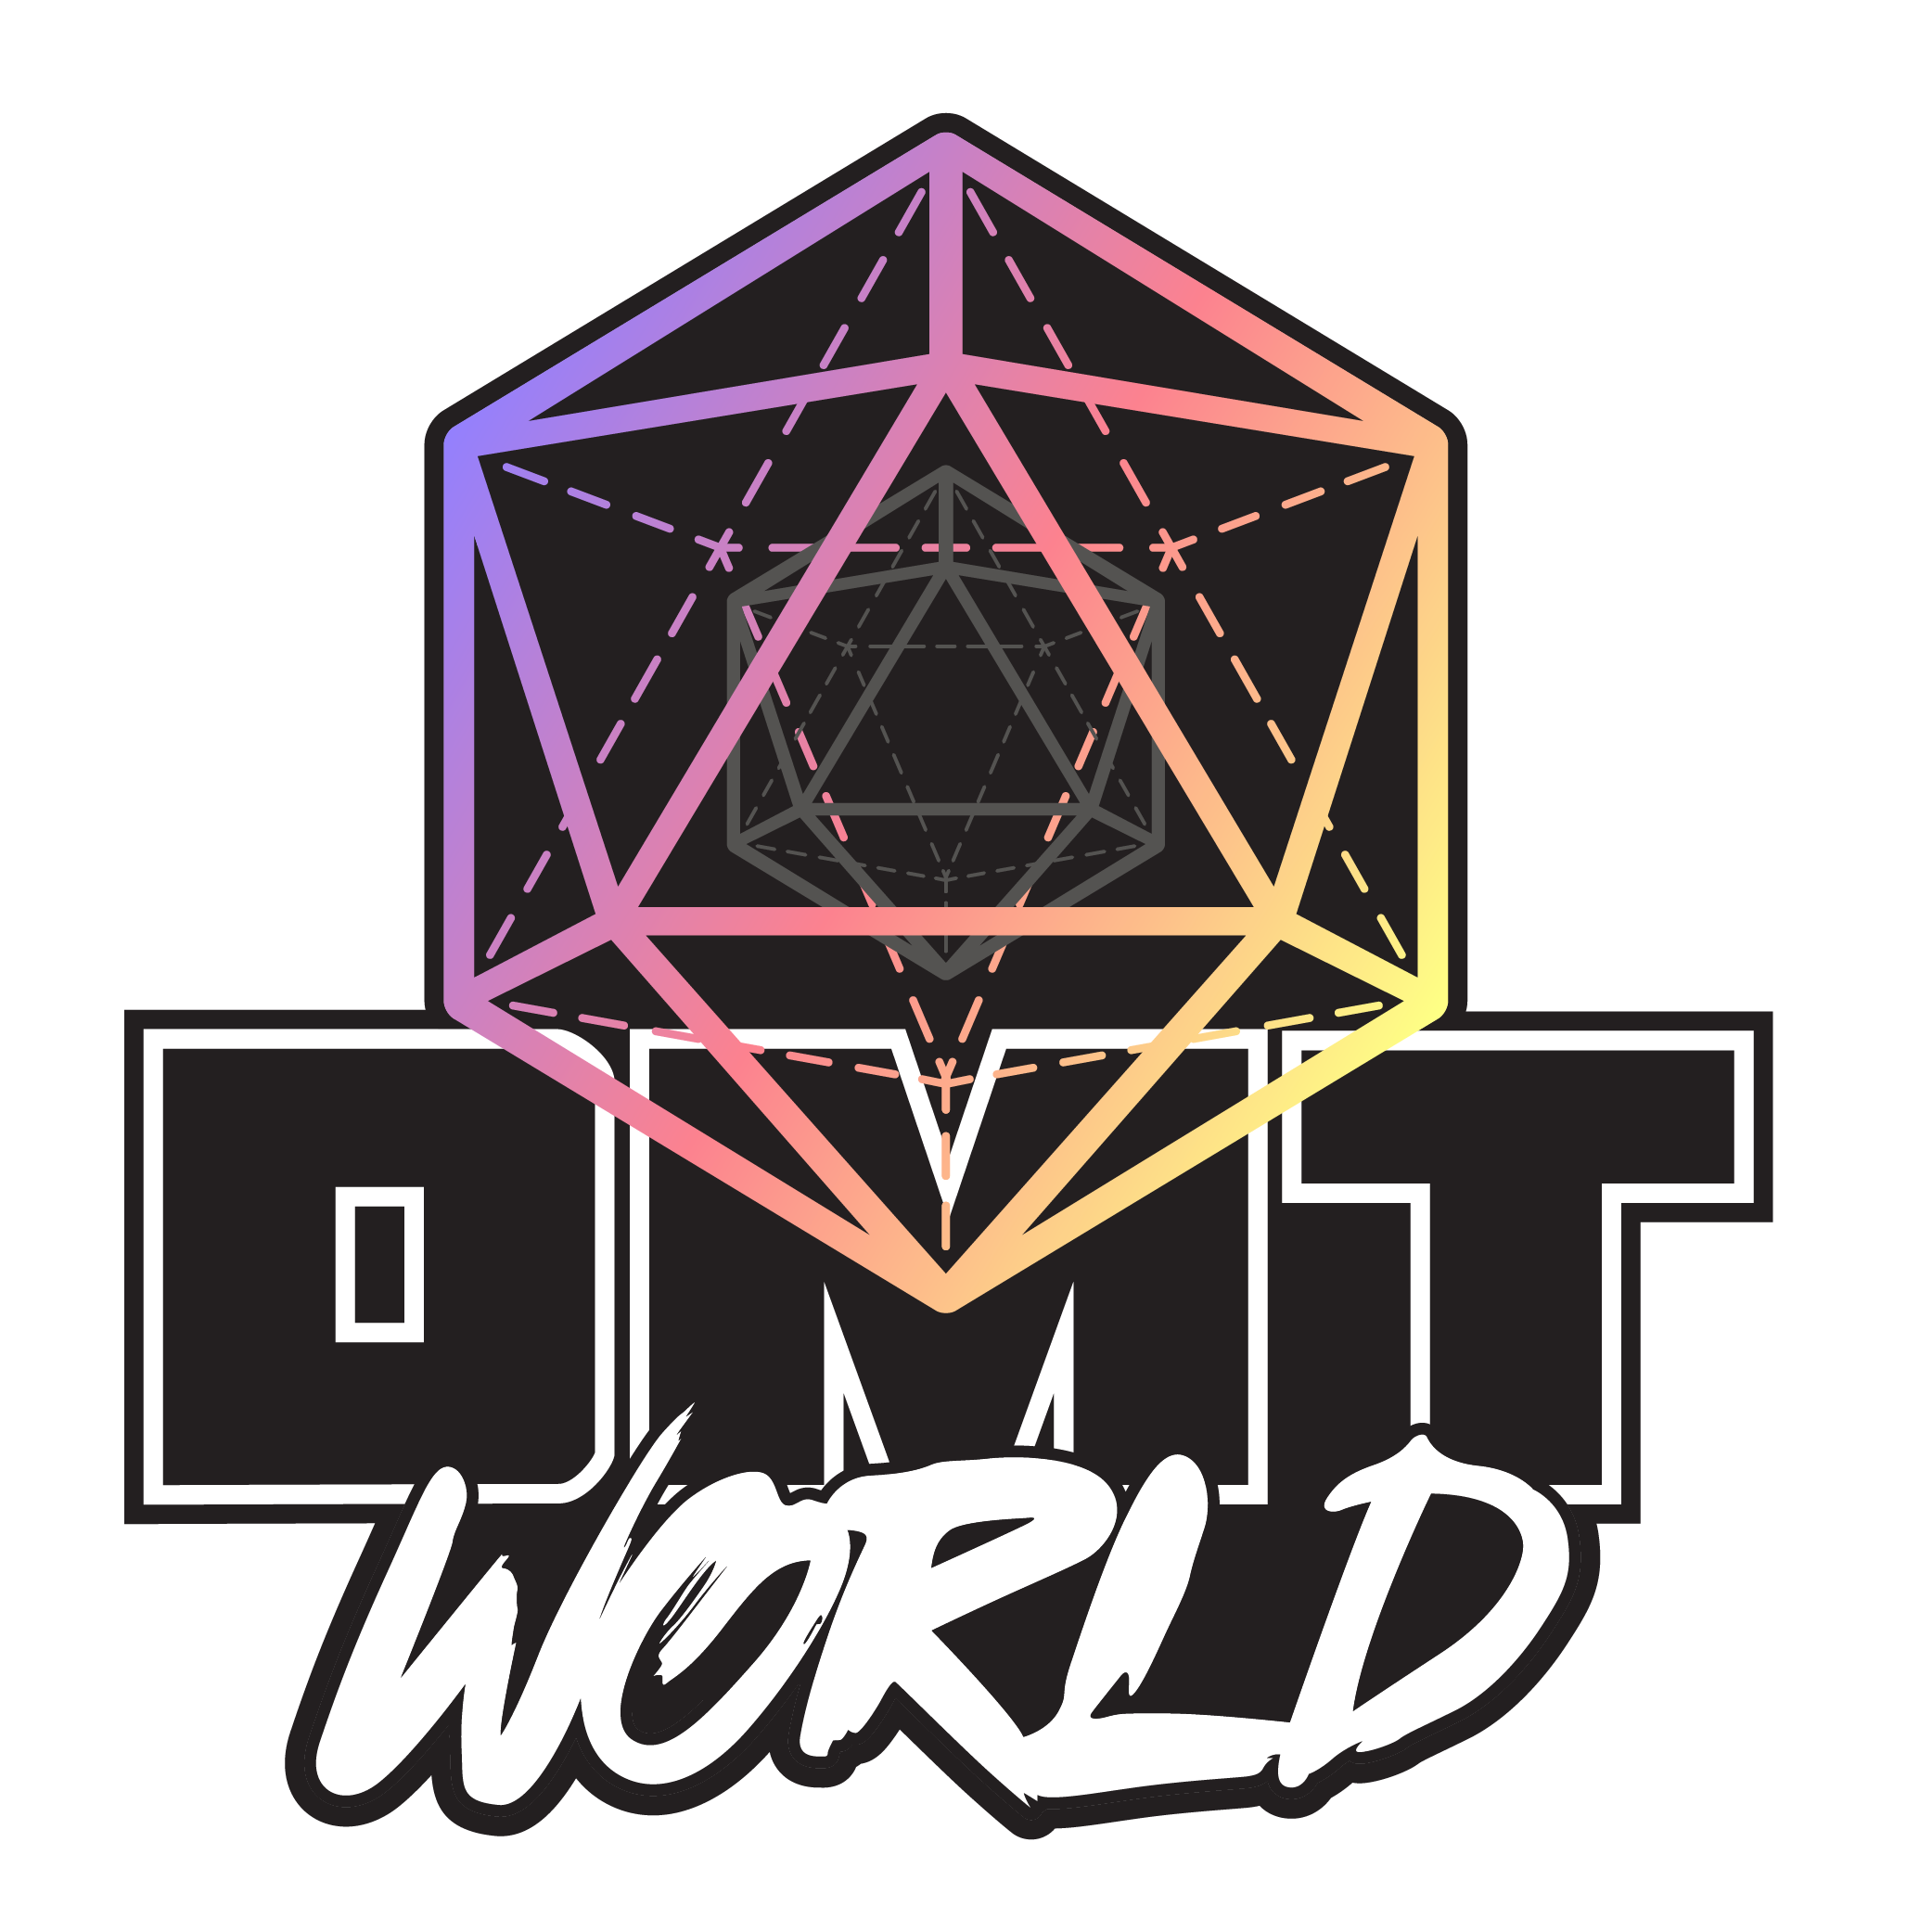 DMT World Podcast